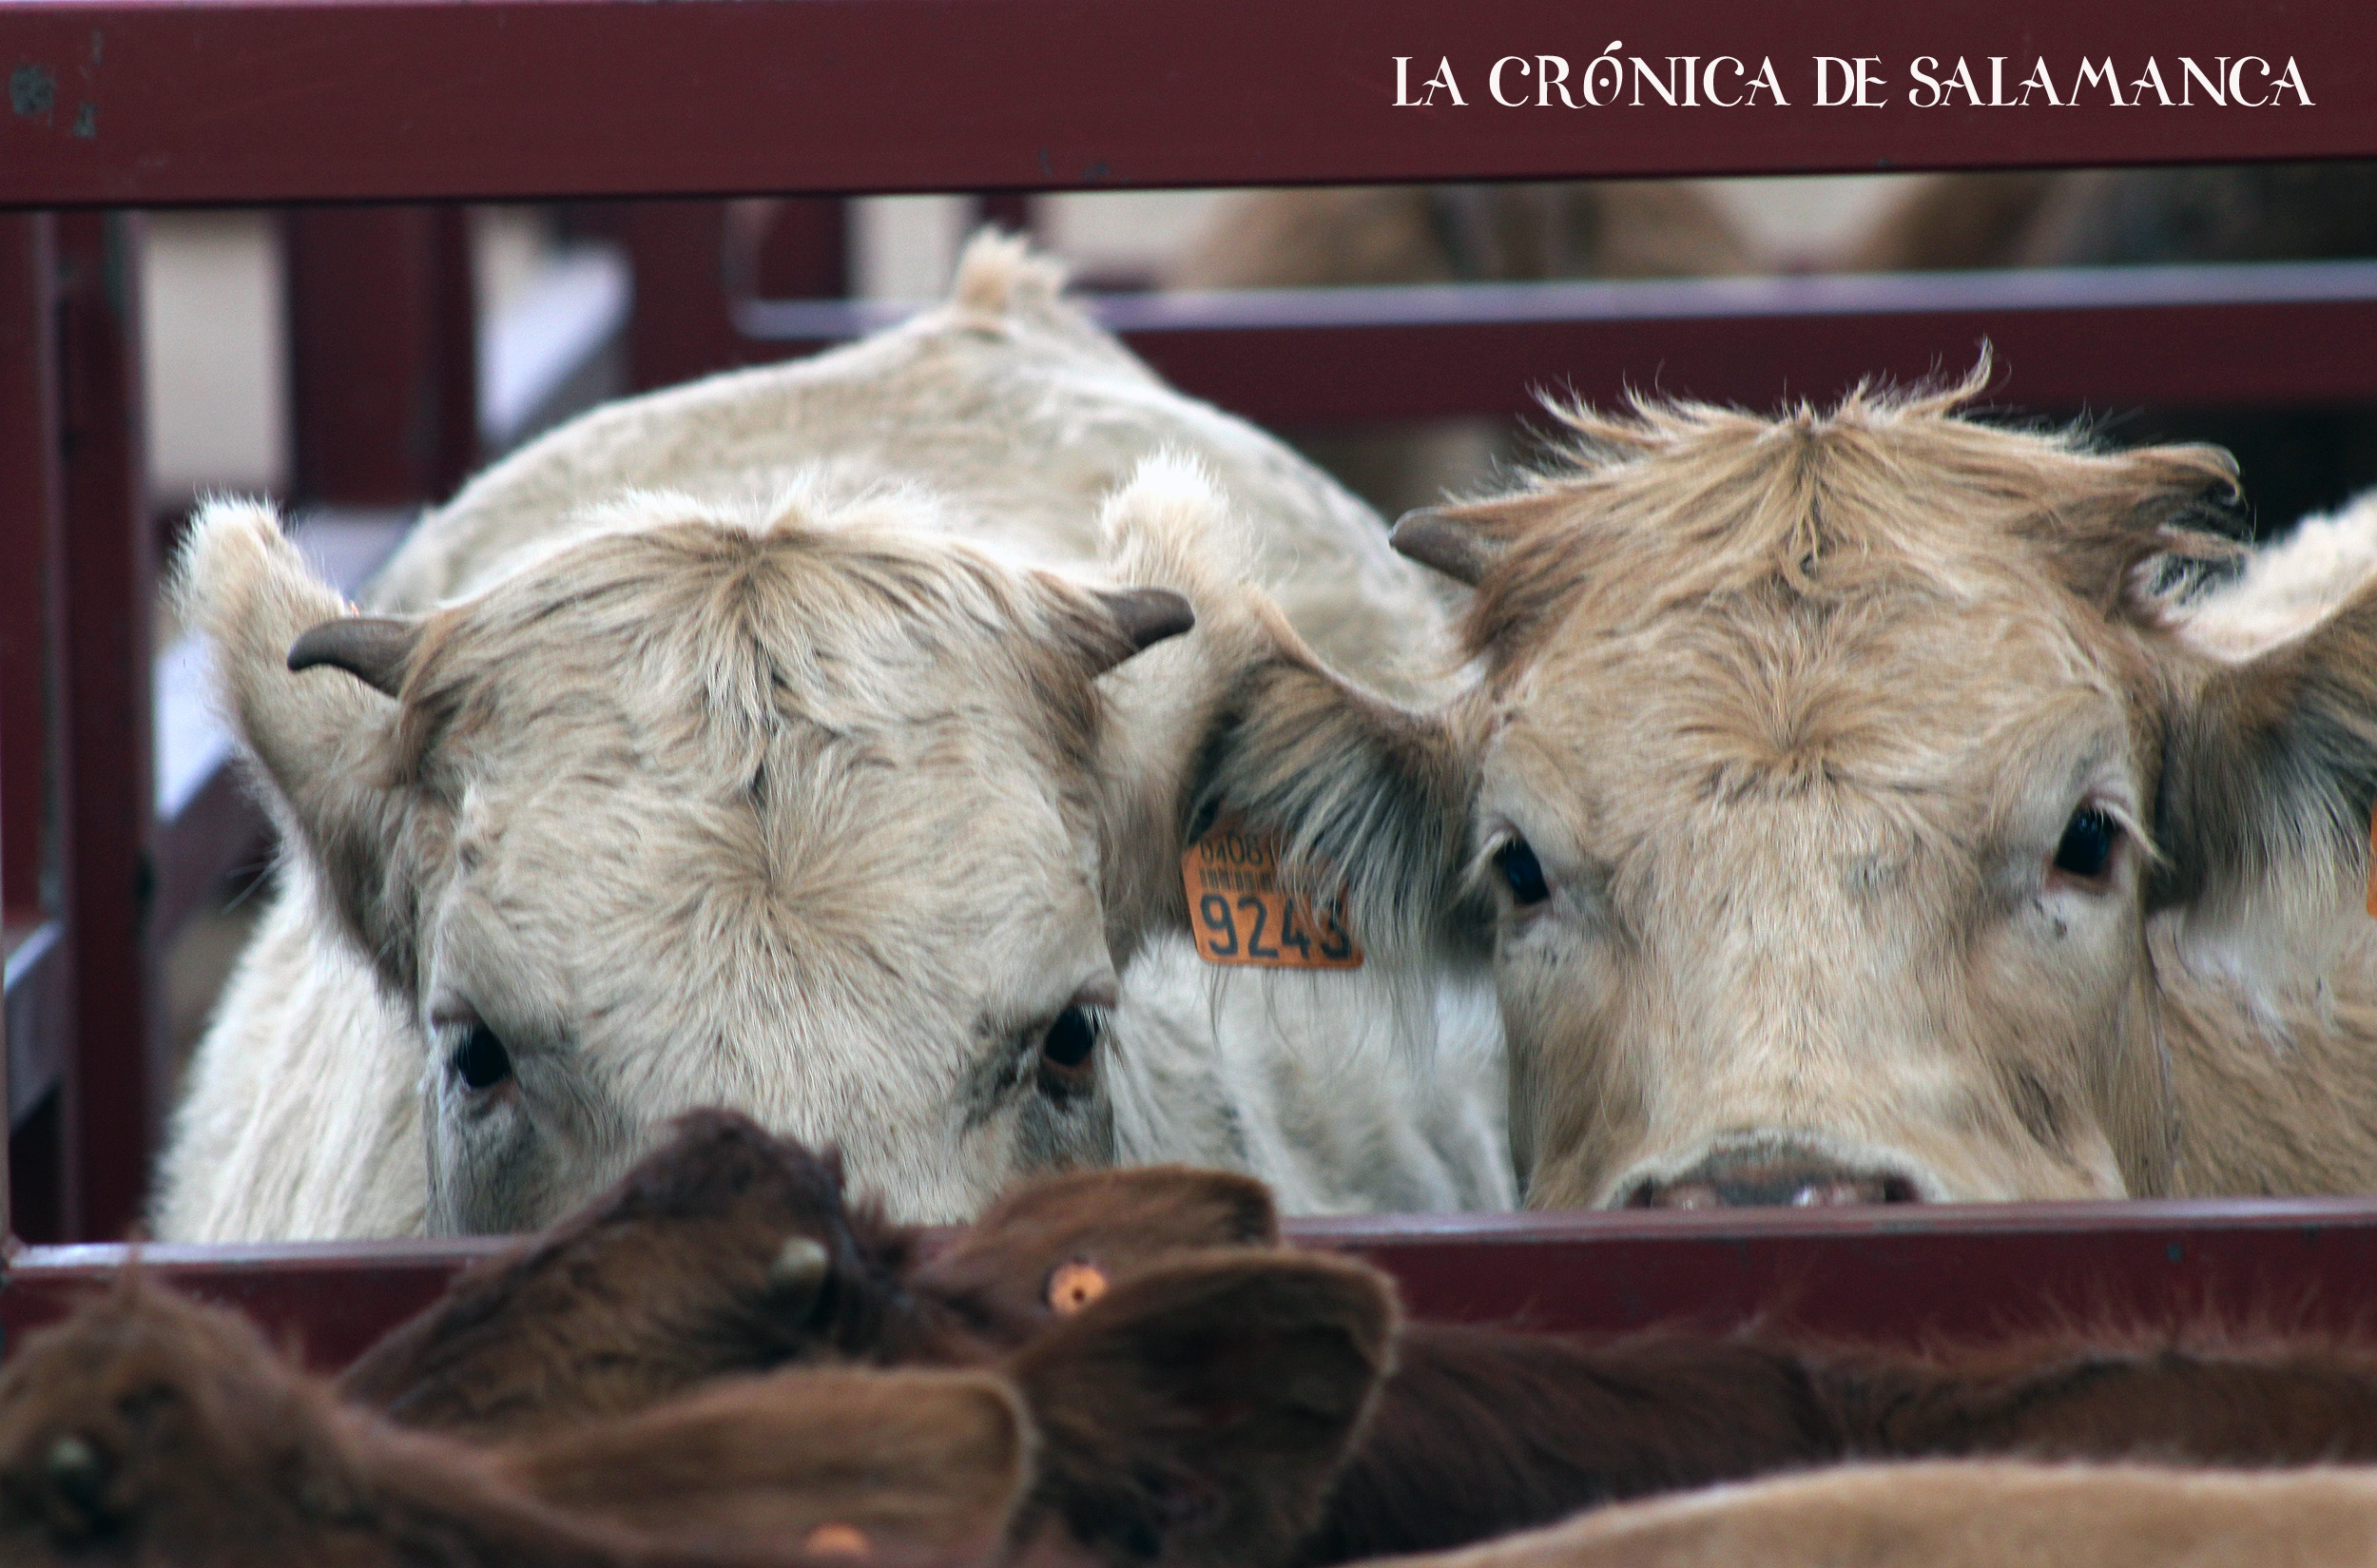 El mercado de ganado de Salamanca.